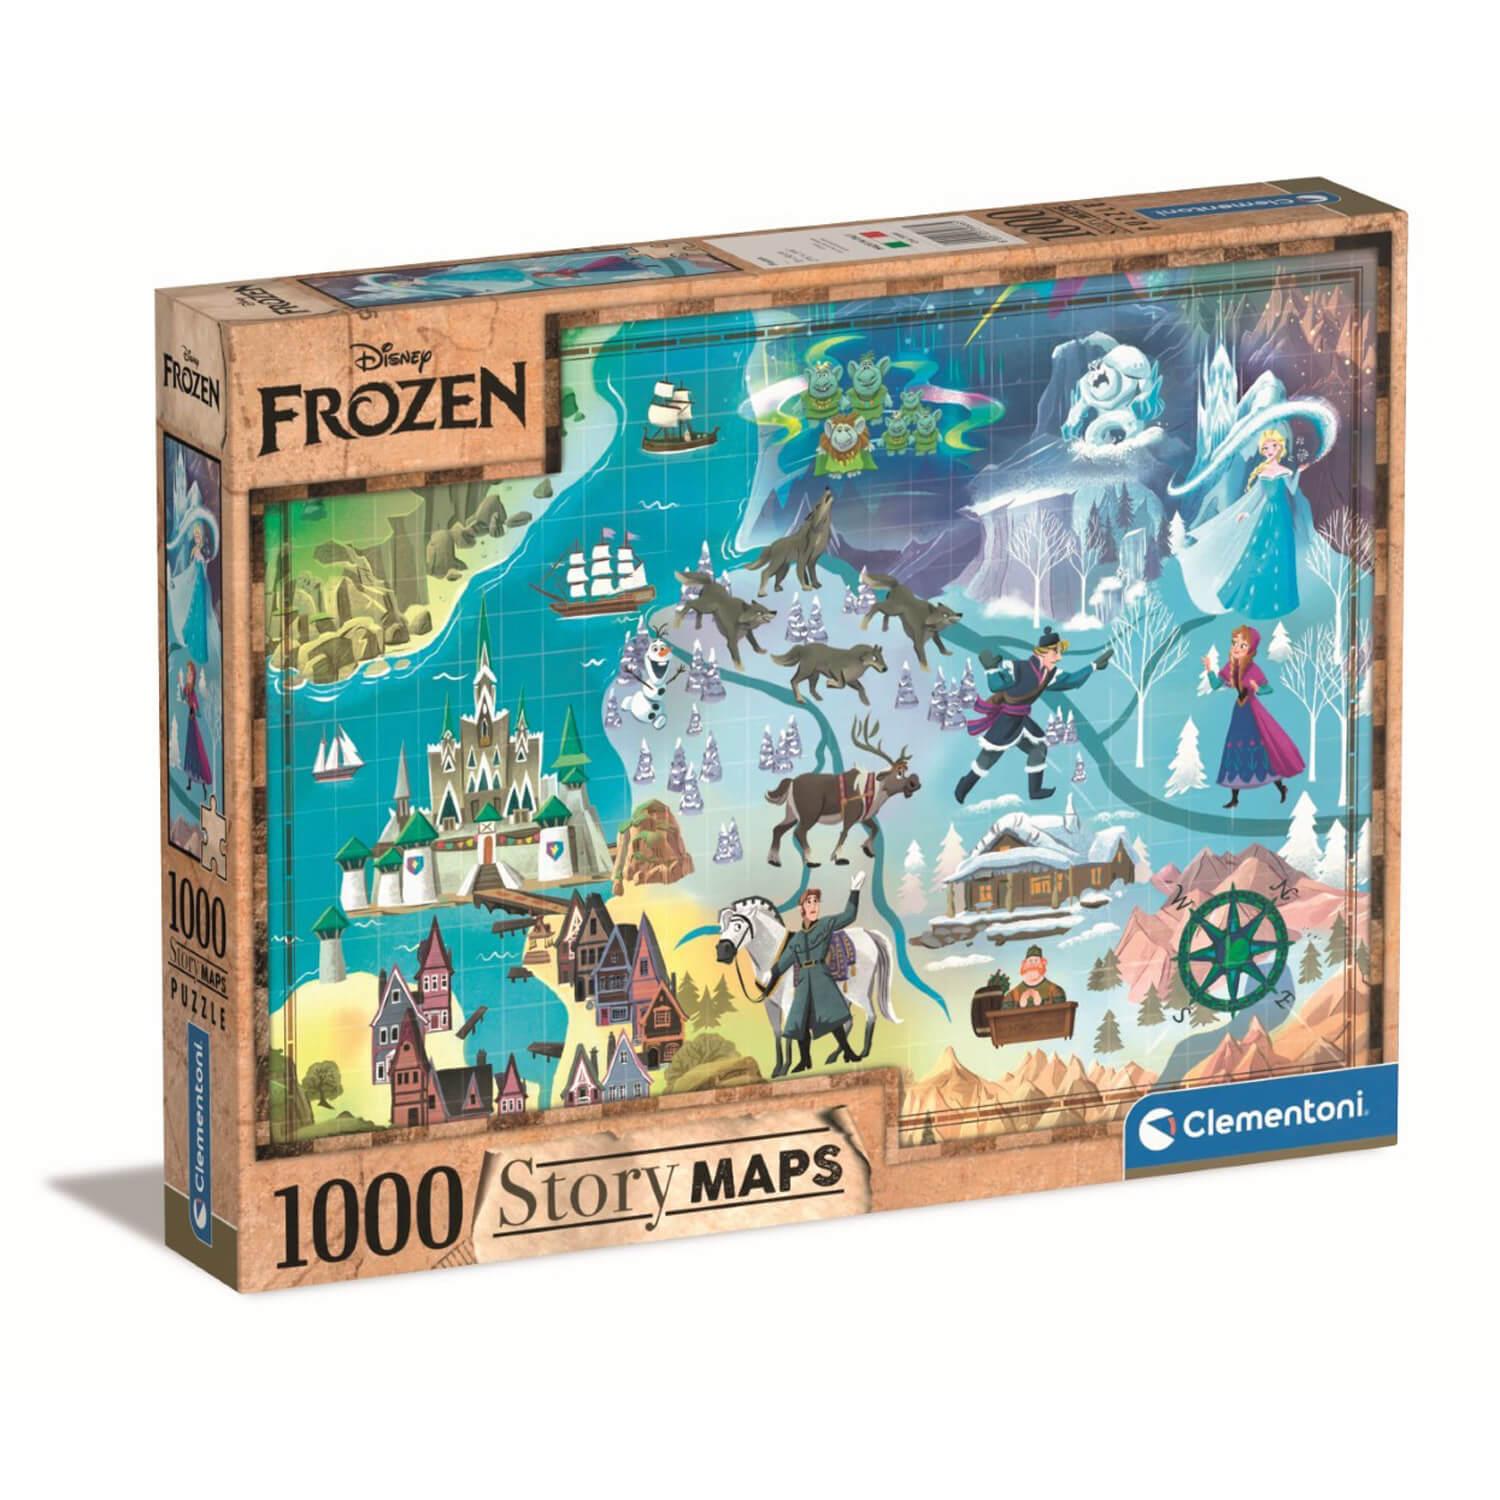 Puzzle 1000 pièces : Impossible puzzle : La Reine des Neiges 2 (Frozen 2)